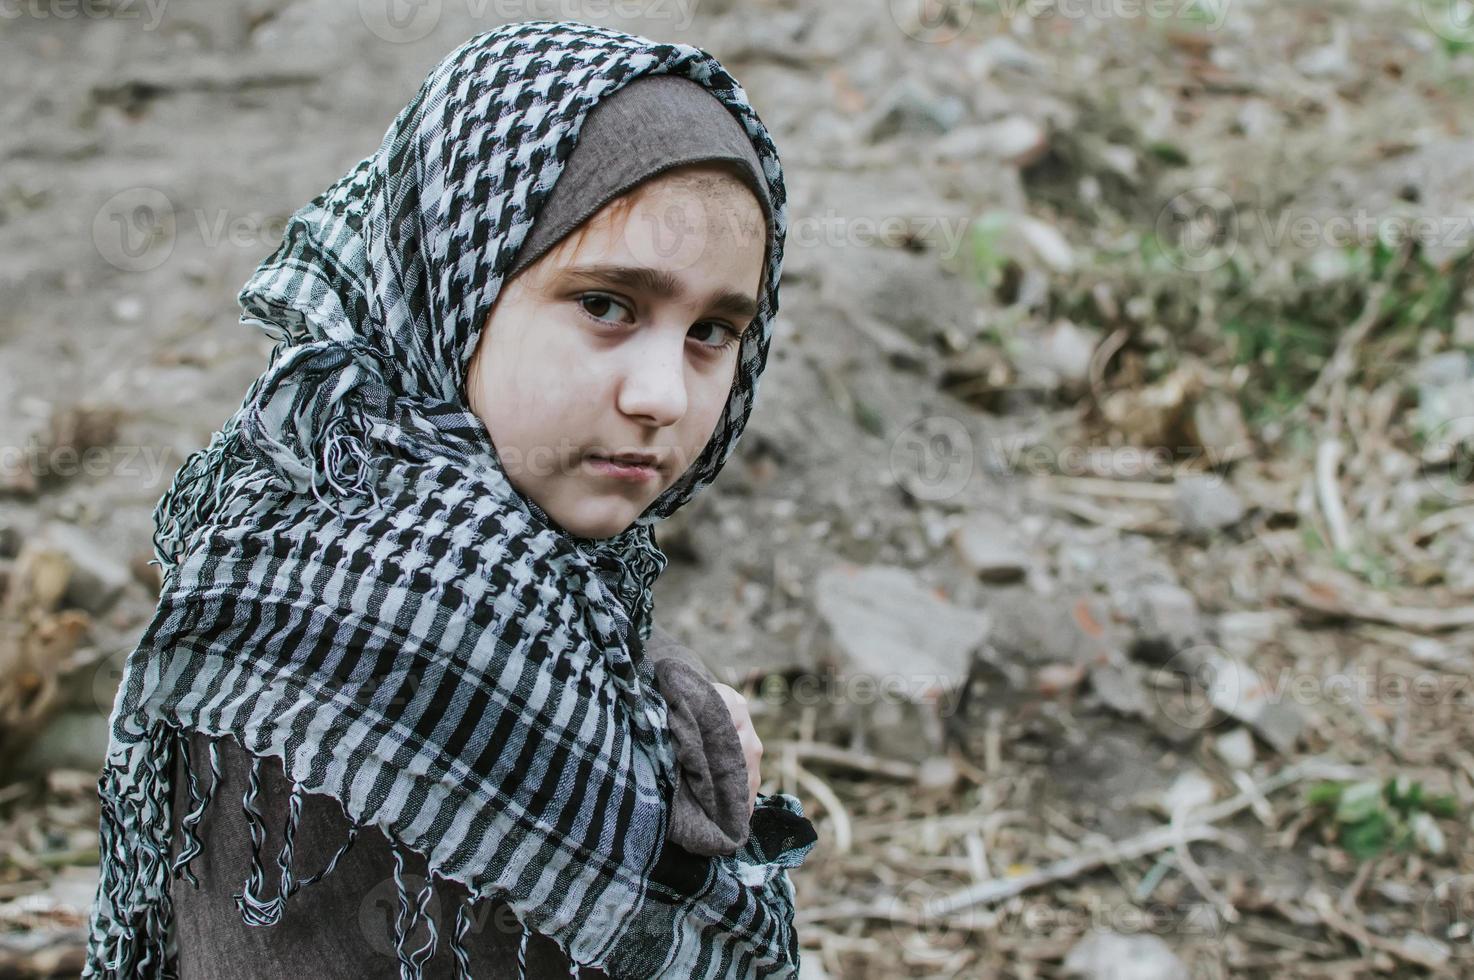 ein Flüchtlingskind im Krieg, ein muslimisches Mädchen mit schmutzigem Gesicht auf den Trümmern, das Konzept von Frieden und Krieg, das Kind weint und wartet auf Hilfe. foto